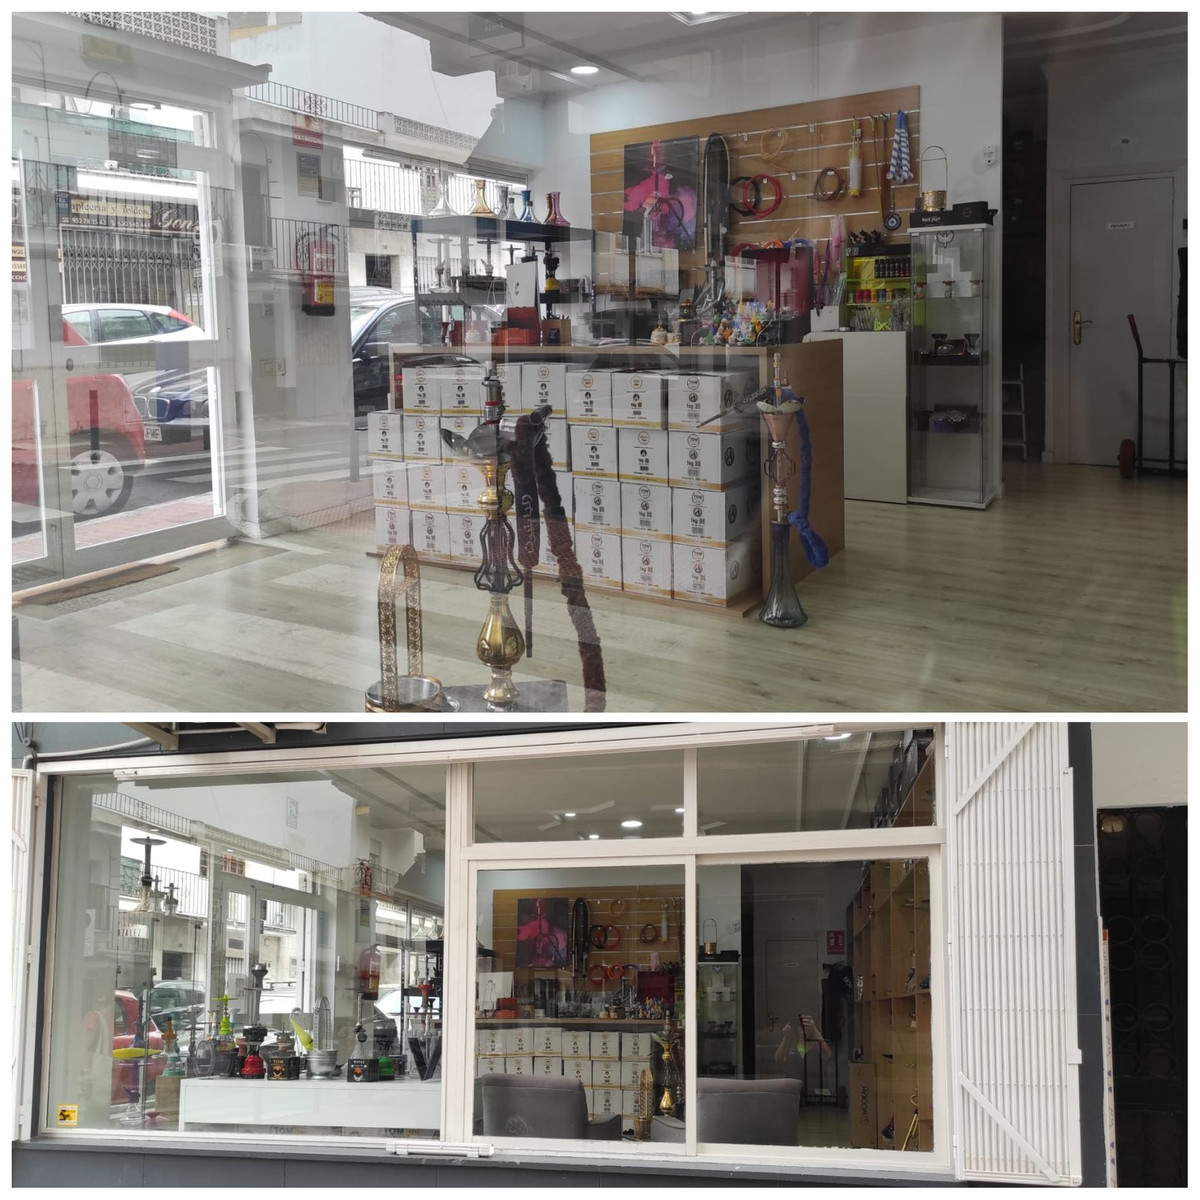 						Commercial  Shop
													for sale 
																			 in San Pedro de Alcántara
					